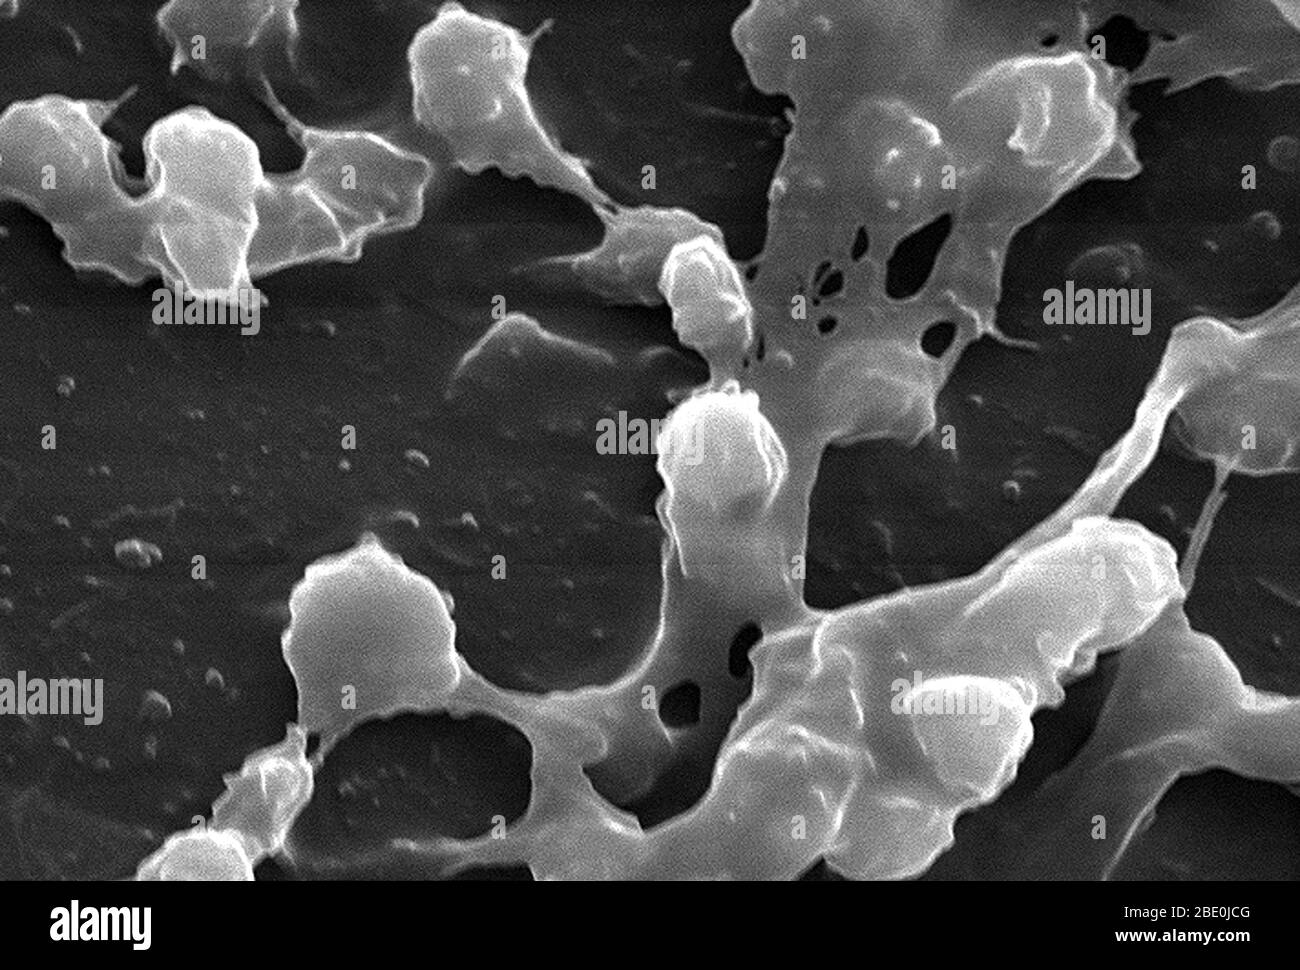 Scanning Electron Micrograph (SEM), der eine große Anzahl von Staphylococcus aureus Bakterien darstellt, die auf der luminalen Oberfläche eines Indwelling-Katheters gefunden wurden. Von Bedeutung ist die klebrig aussehende Substanz, die zwischen den runden Cocci-Bakterien gewebt wurde, die aus Polysacchariden bestand und als Biofilm bekannt ist. Dieser Biofilm wurde gefunden, um die Bakterien, die die Substanz vor Angriffen durch antimikrobielle Mittel wie Antibiotika absondern zu schützen. Staphylococcus aureus, auch bekannt als ''golden Staph'' und Oro Staphira, ist ein fakultatives anaerobes grampositives Kokkkkakterium. Staph Bakterien sind auf Stockfoto